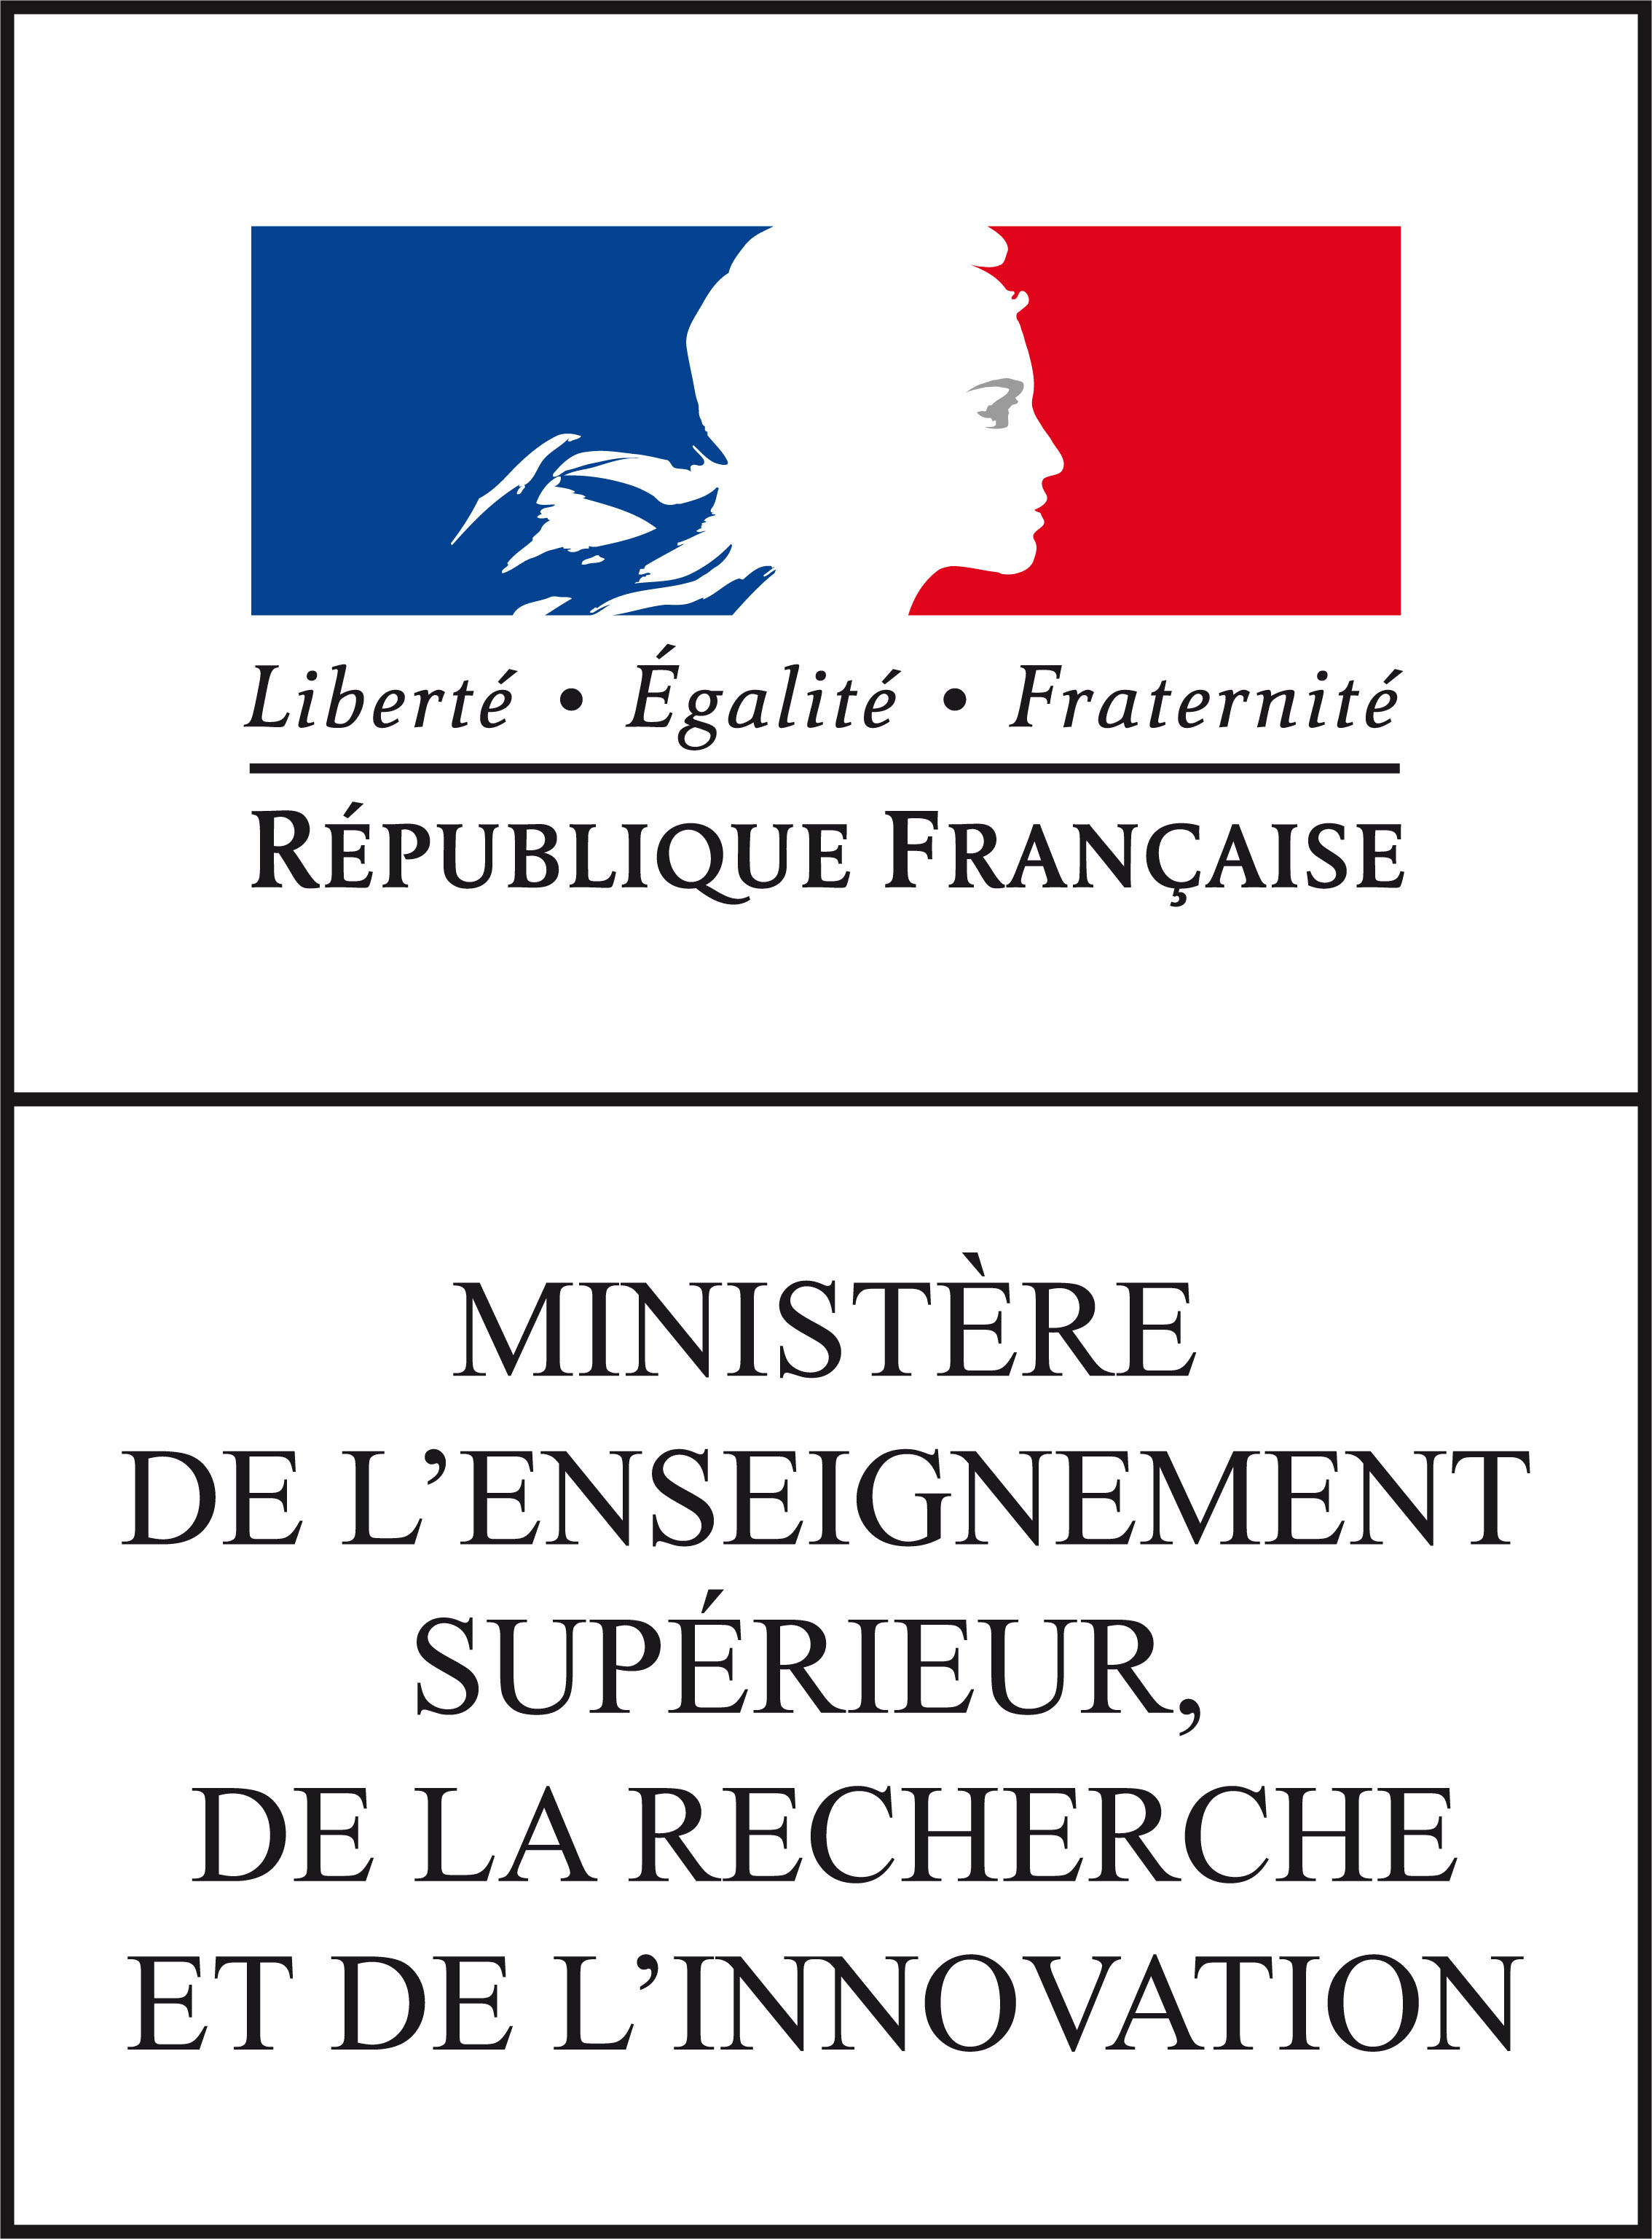 Logo du Ministère de l'enseignement supérieur et de la recherche